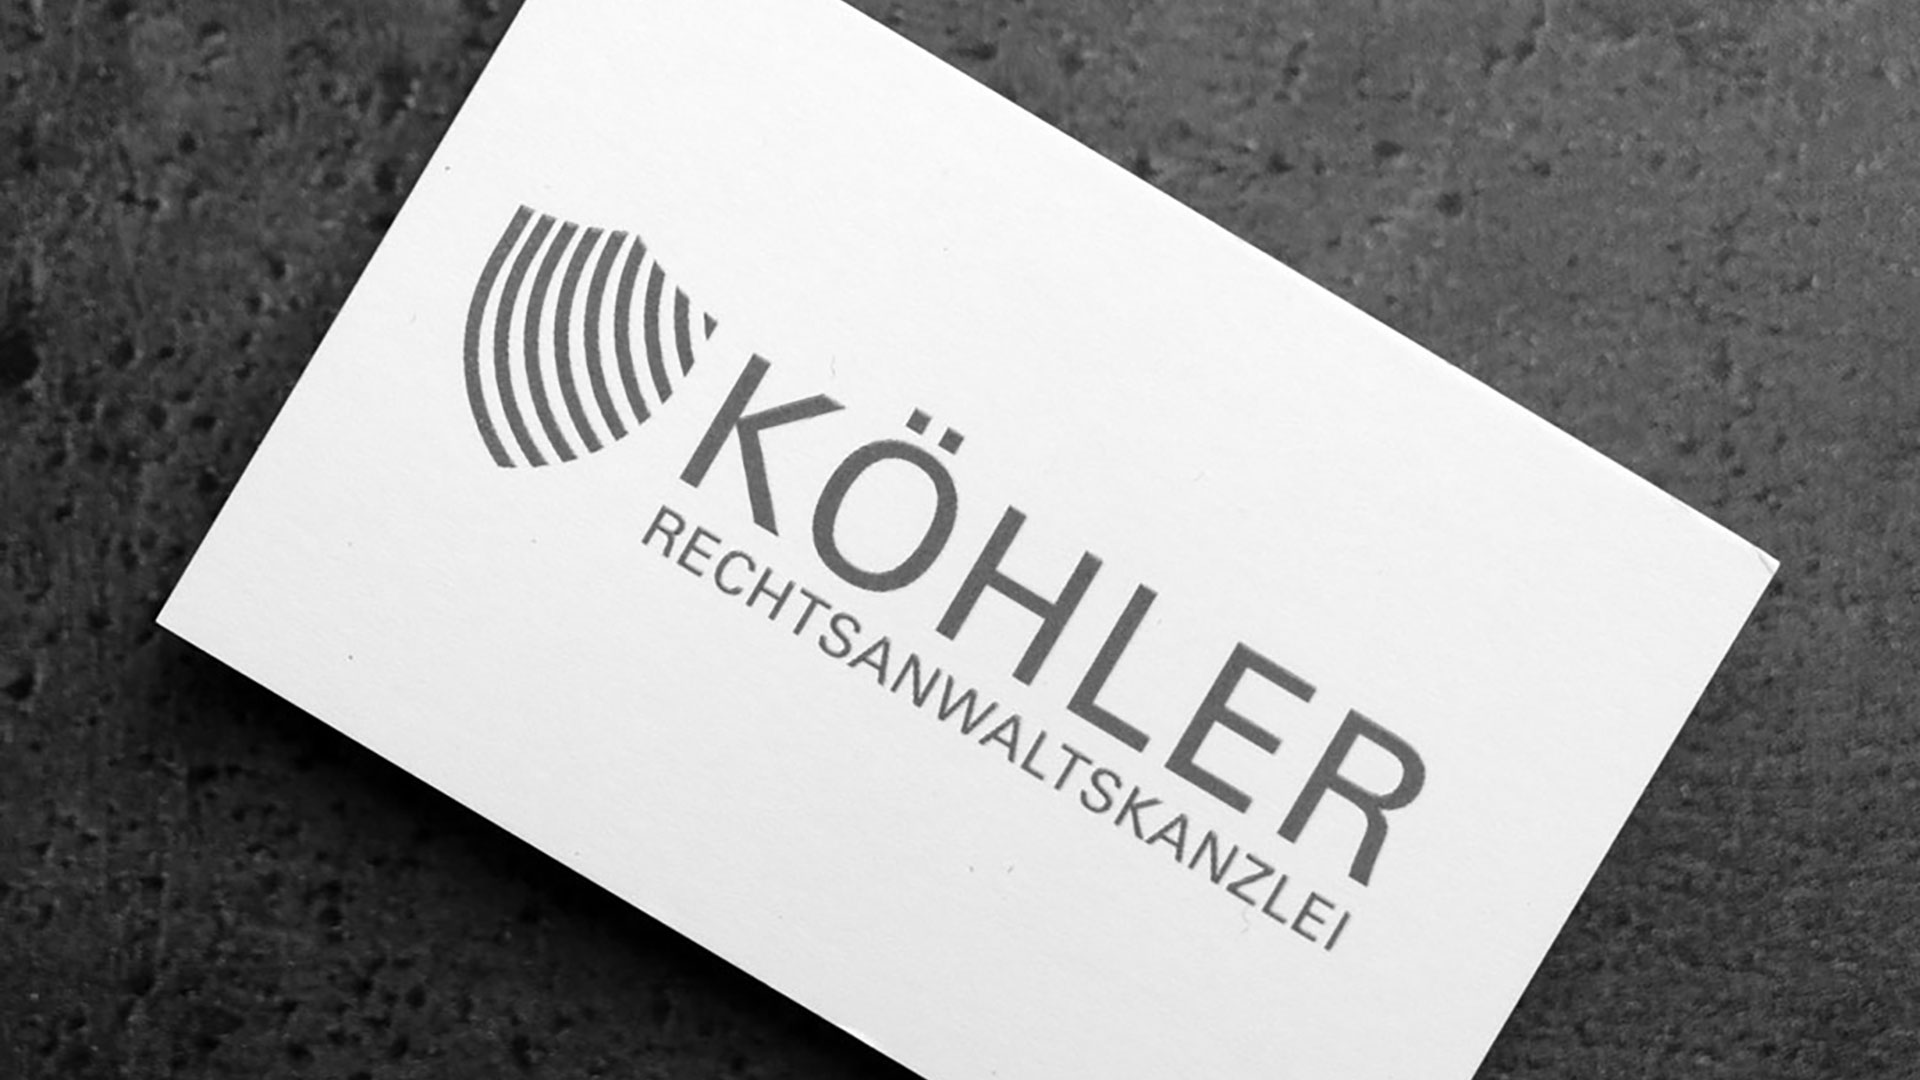 Rechtsanwaltskanzlei Köhler - Corporate Design & Geschäftsausstattung